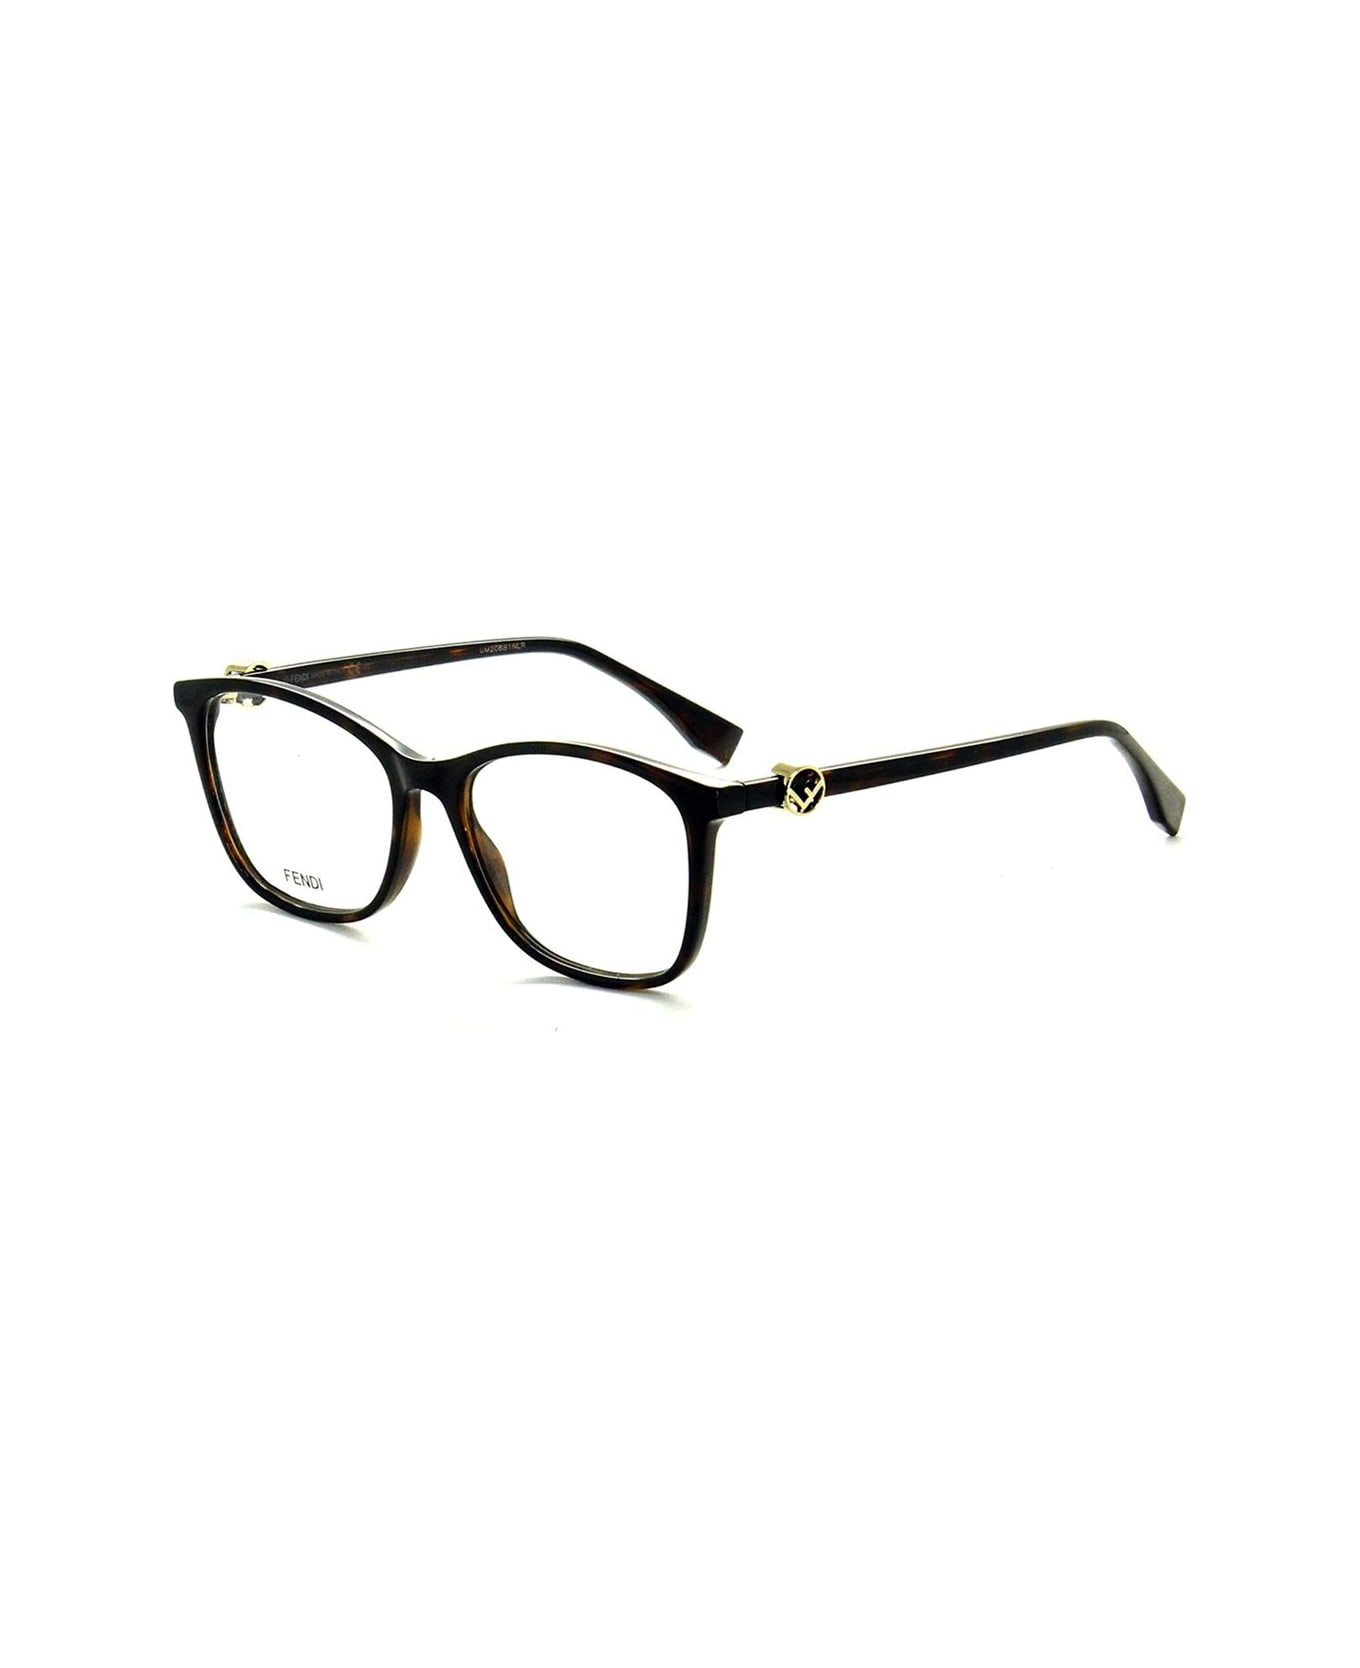 Fendi Eyewear Ff 0300 Glasses - Marrone